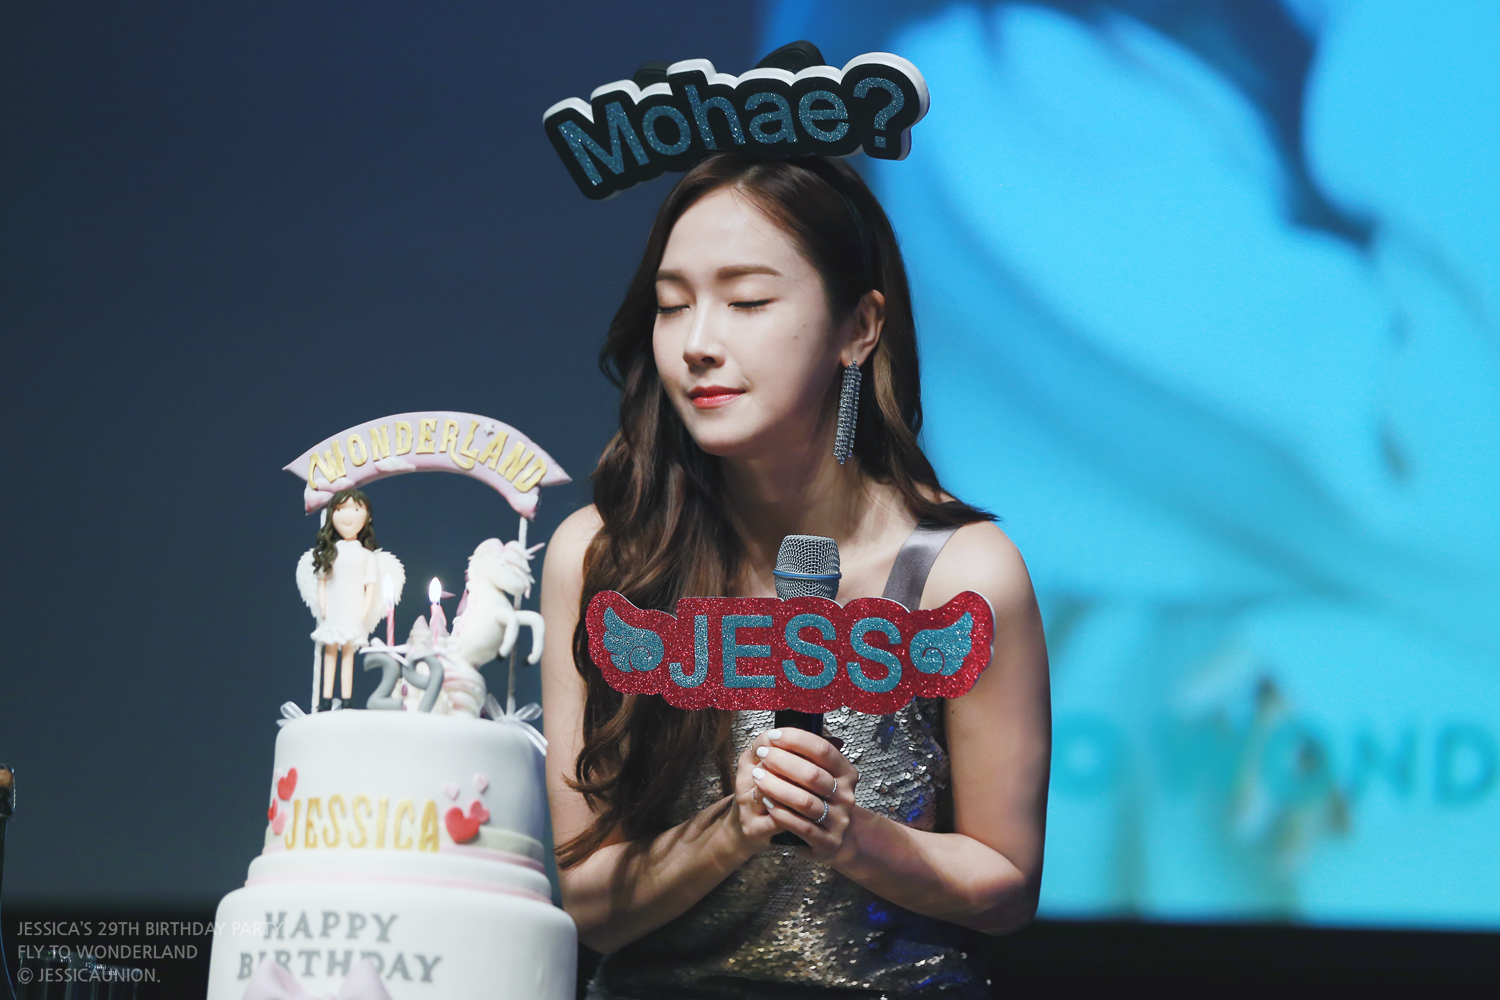 [PIC][15-04-2017]Jessica tham dự "JESSICA'S 29TH BIRTHDAY PARTY" vào tối nay 33858007110_a6c527e41f_o